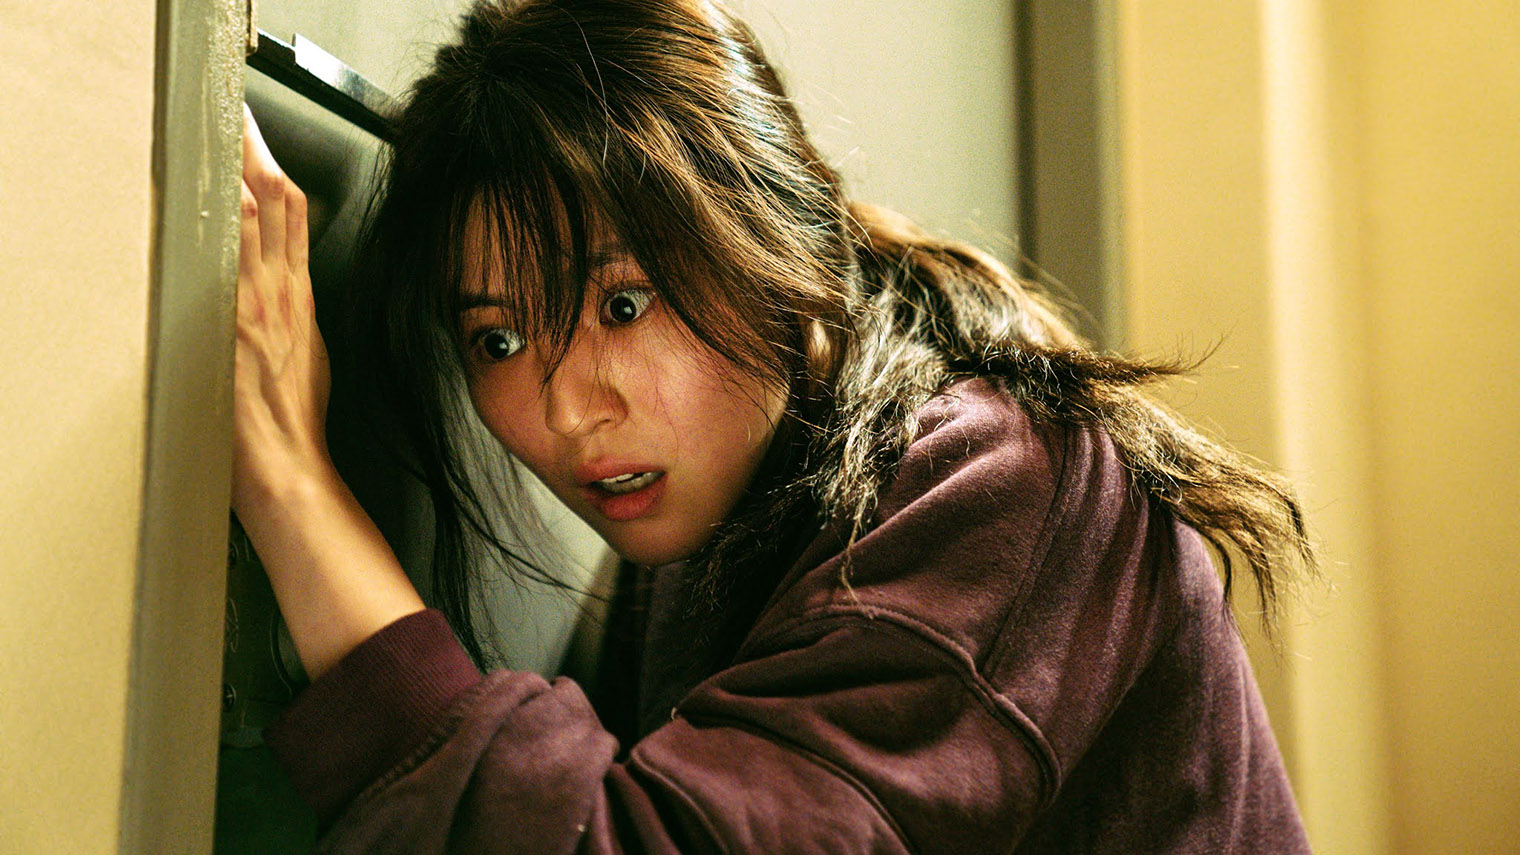 Для подготовки к роли актриса Хан Со-хи много тренировалась, занималась кикбоксингом и набрала за месяц 10 кг мышечной массы. Почти все сцены драк в сериале она исполняет самостоятельно. Источник: Netflix